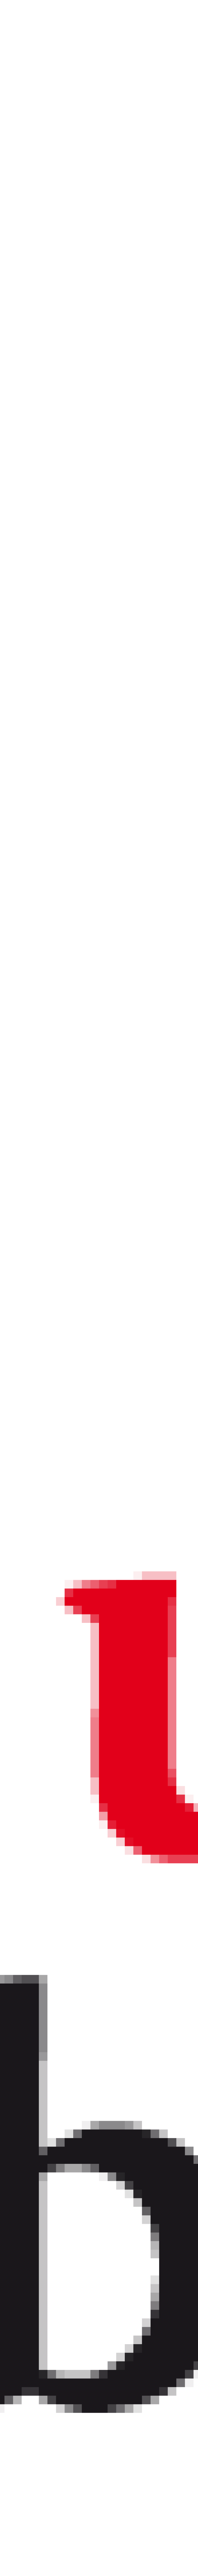 Logo ljr, Landesjugendring Brandenburg